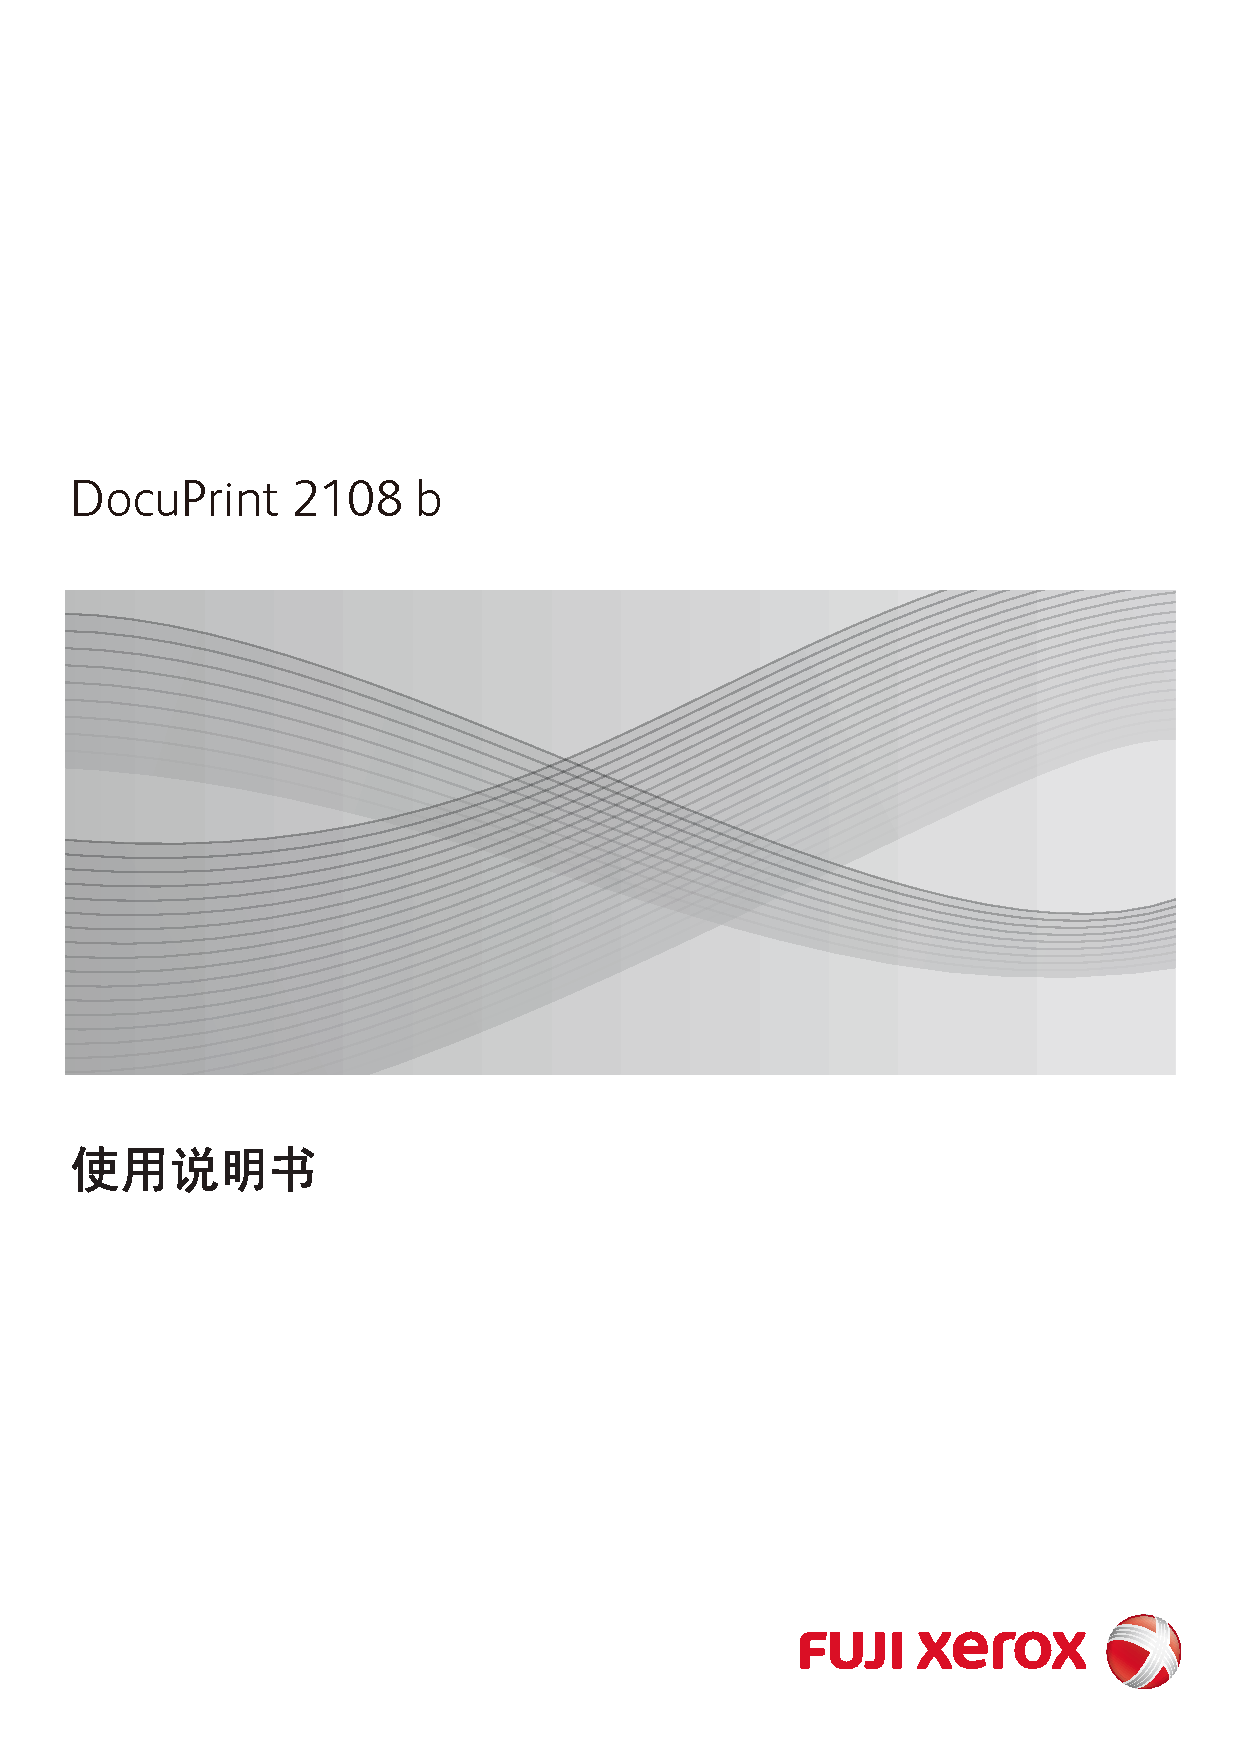 富士施乐 Fuji Xerox DocuPrint 2108 b 使用说明书 封面